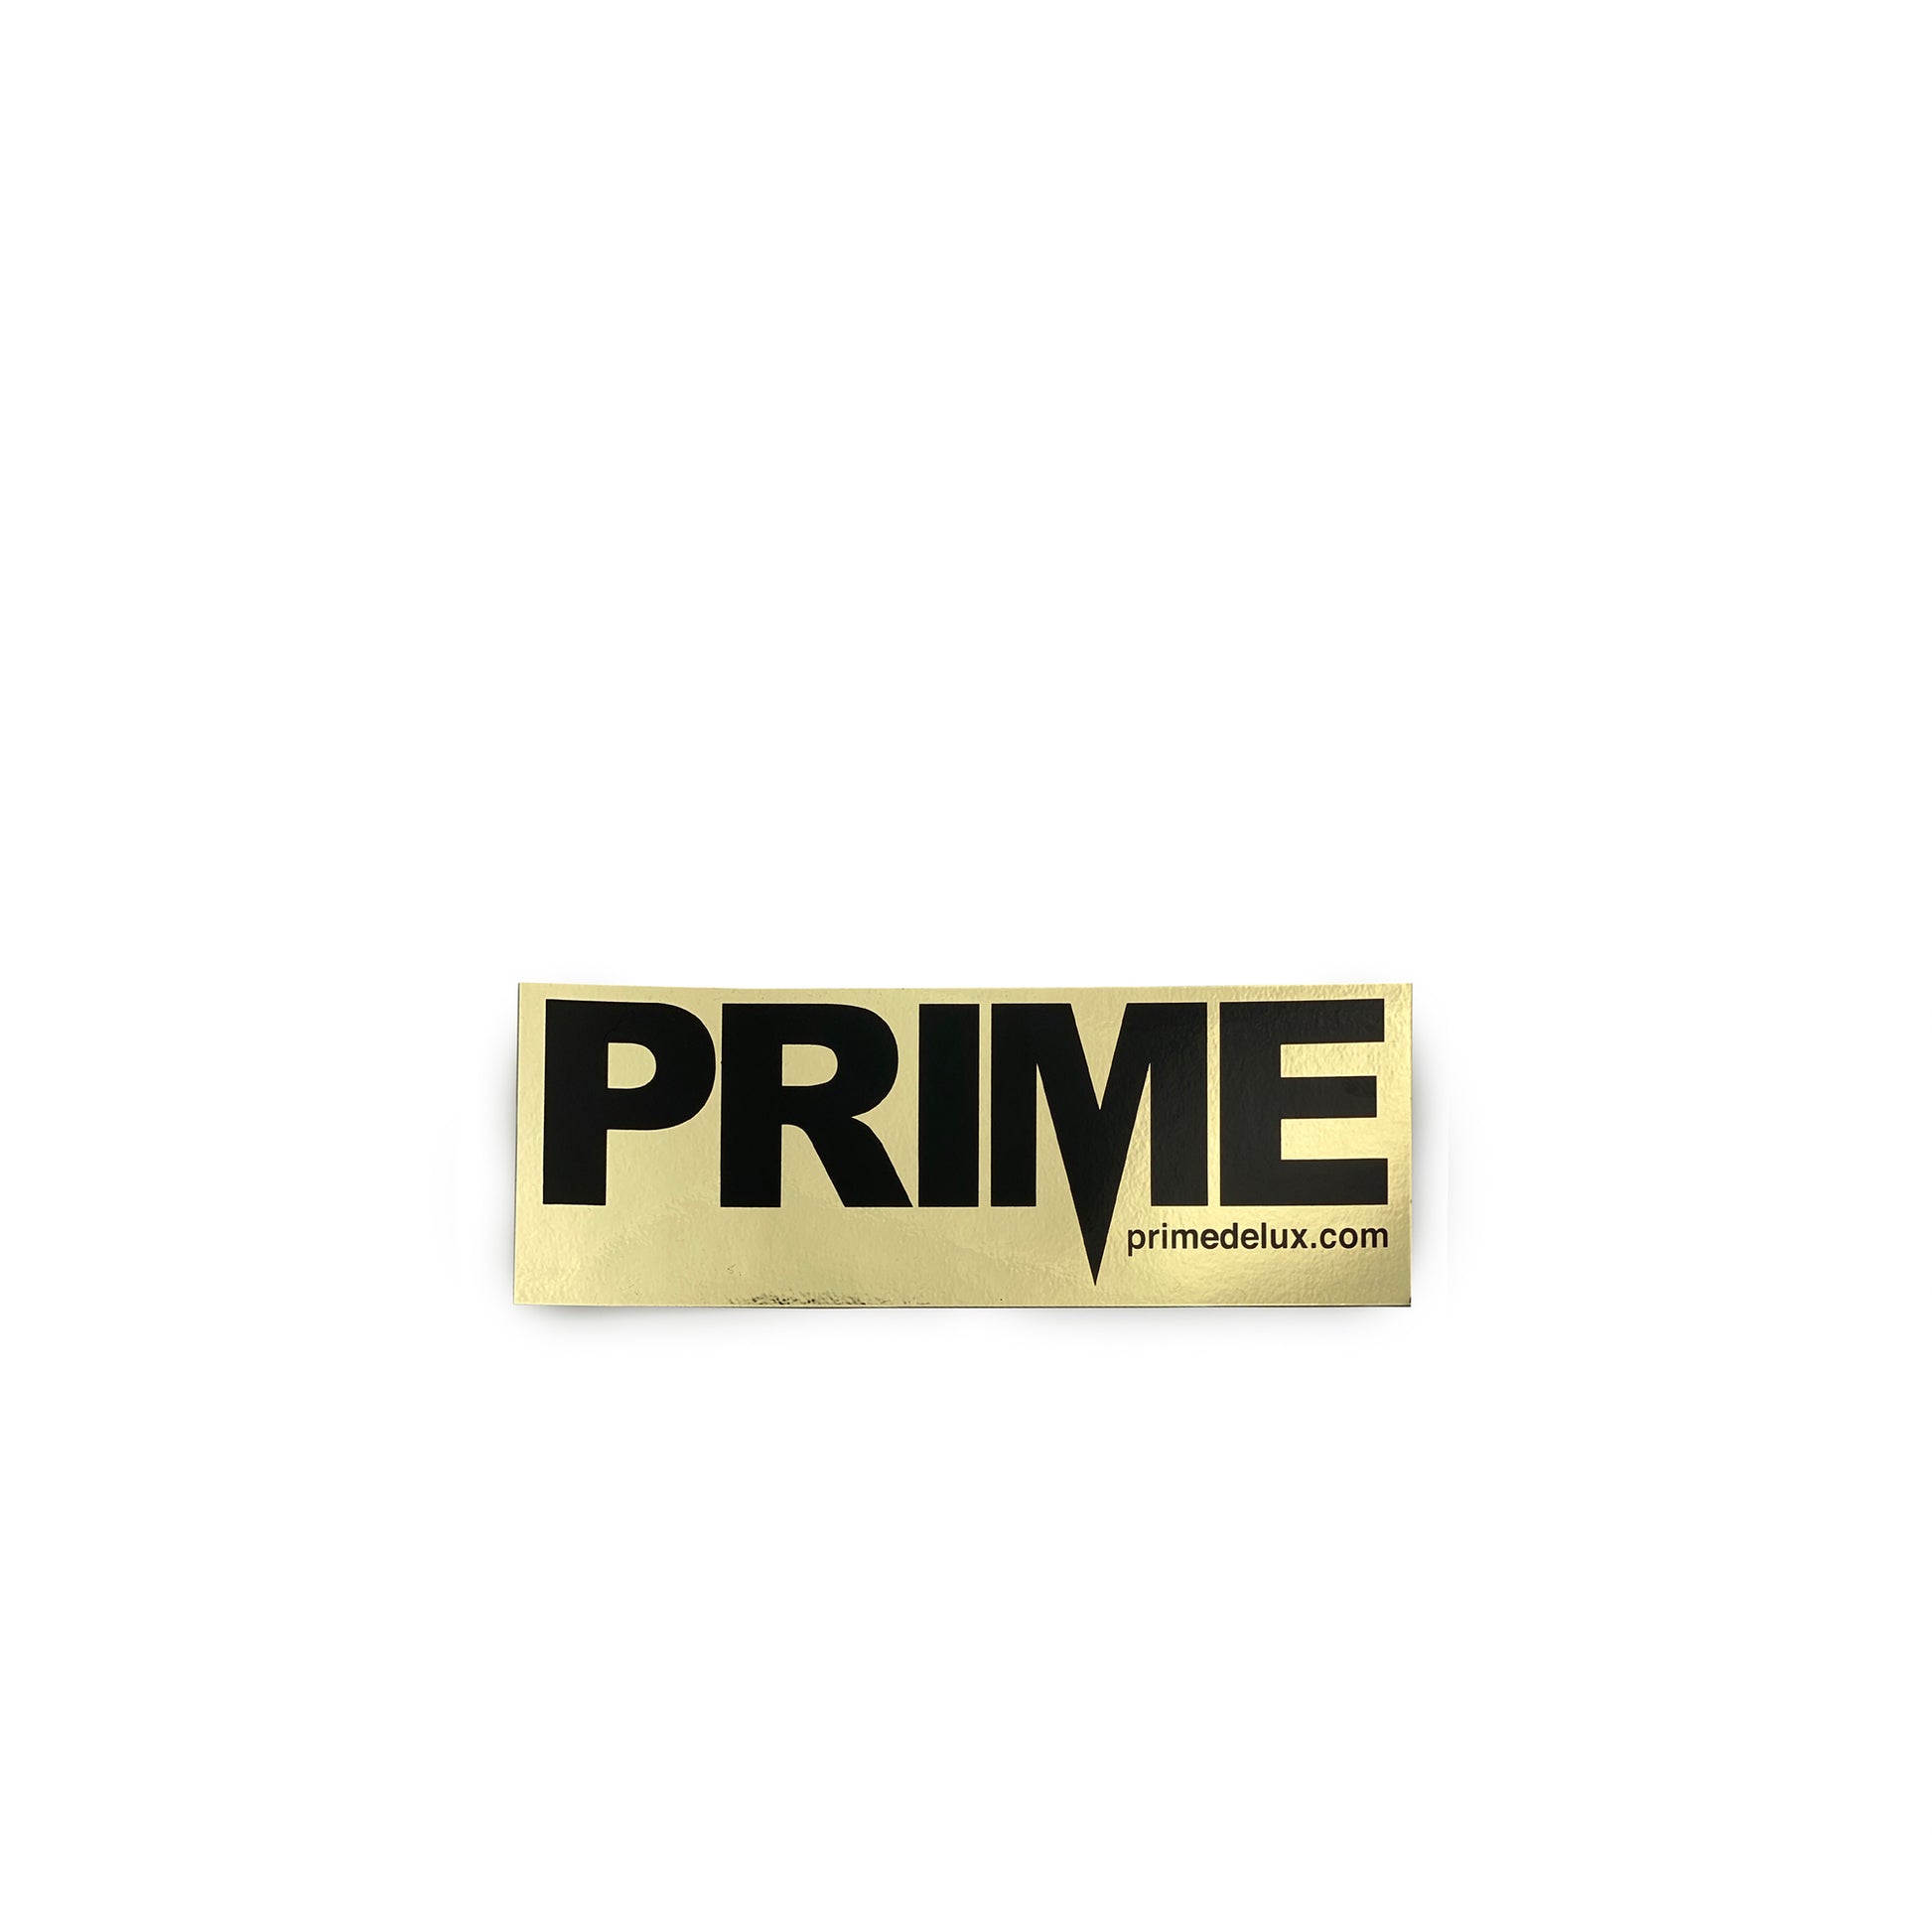 Prime Delux OG Sticker M - Black / Foil Gold - Prime Delux Store